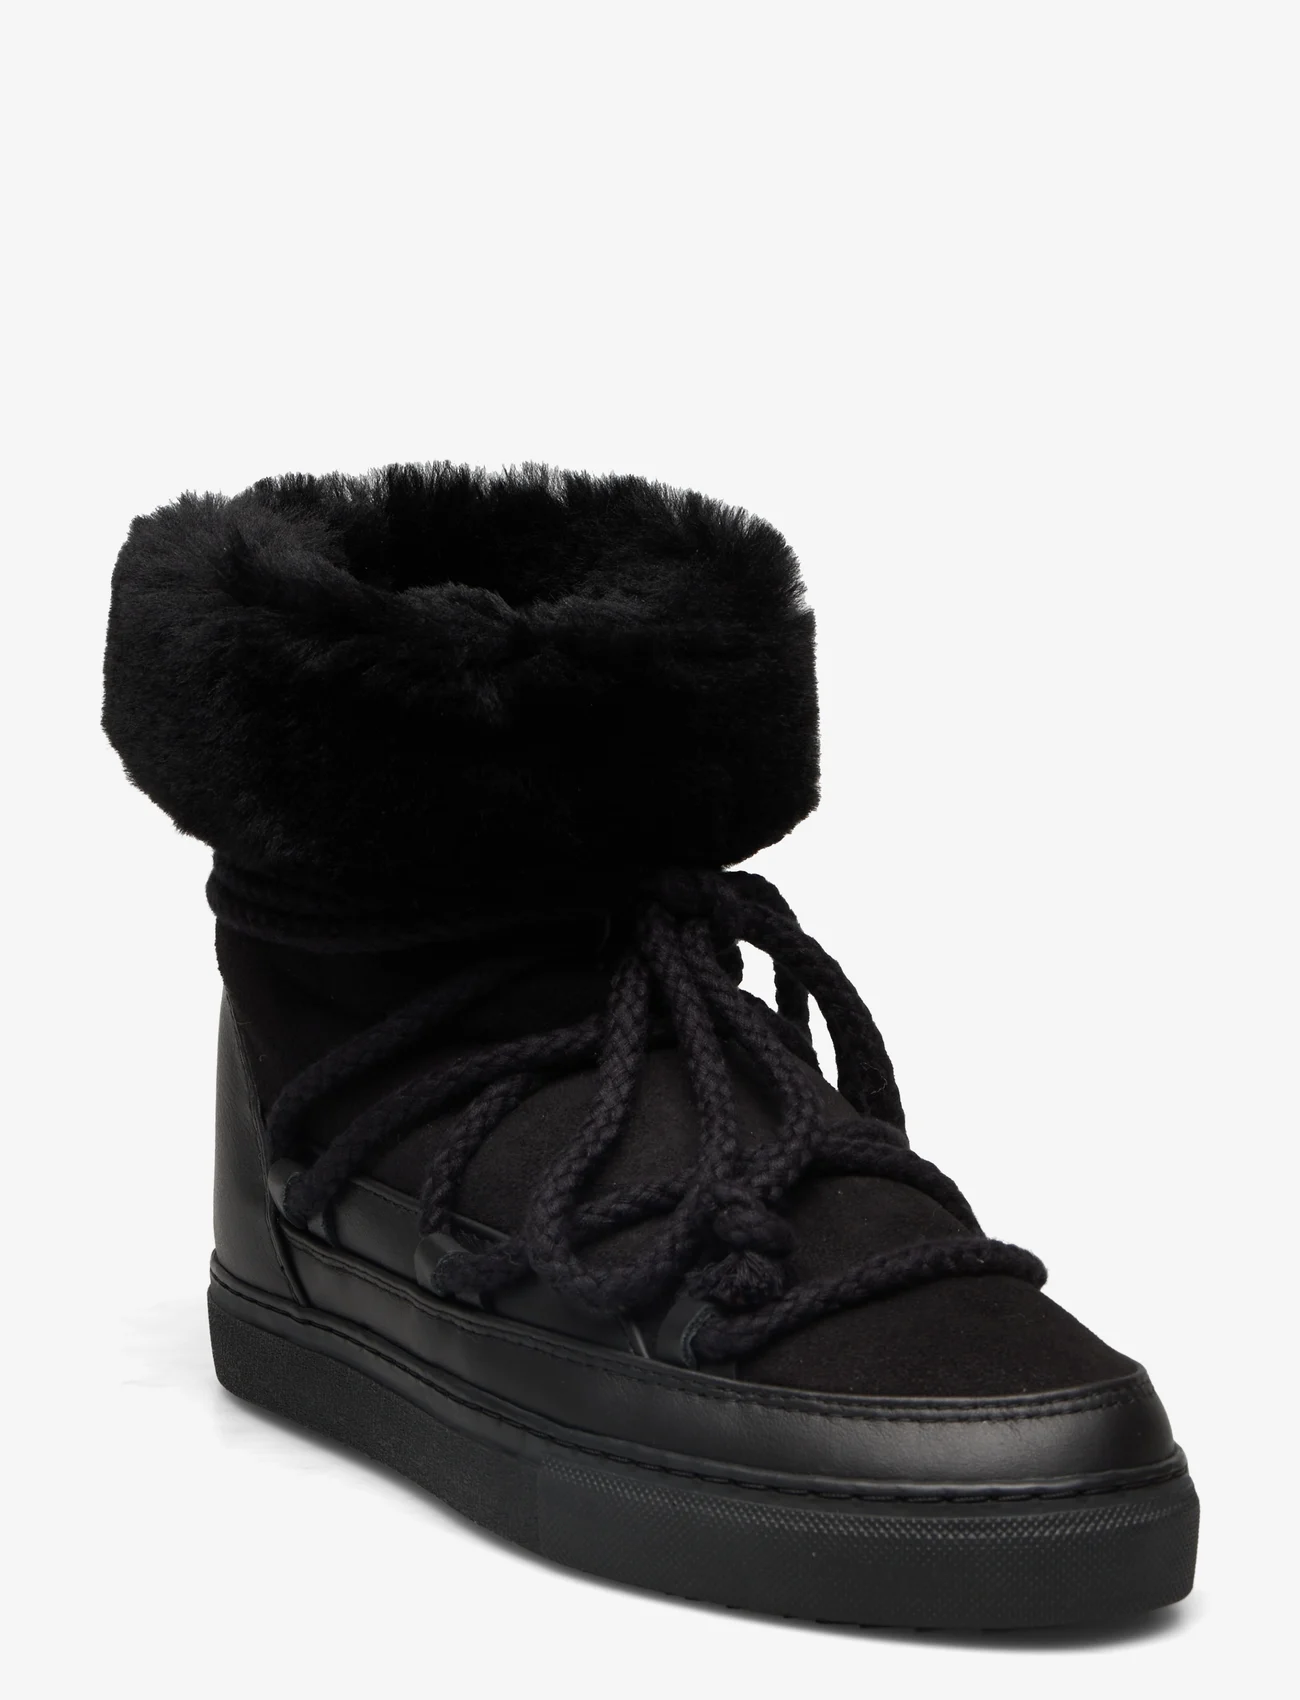 Inuikii - CLASSIC HIGH - Žieminiai batai - black - 0